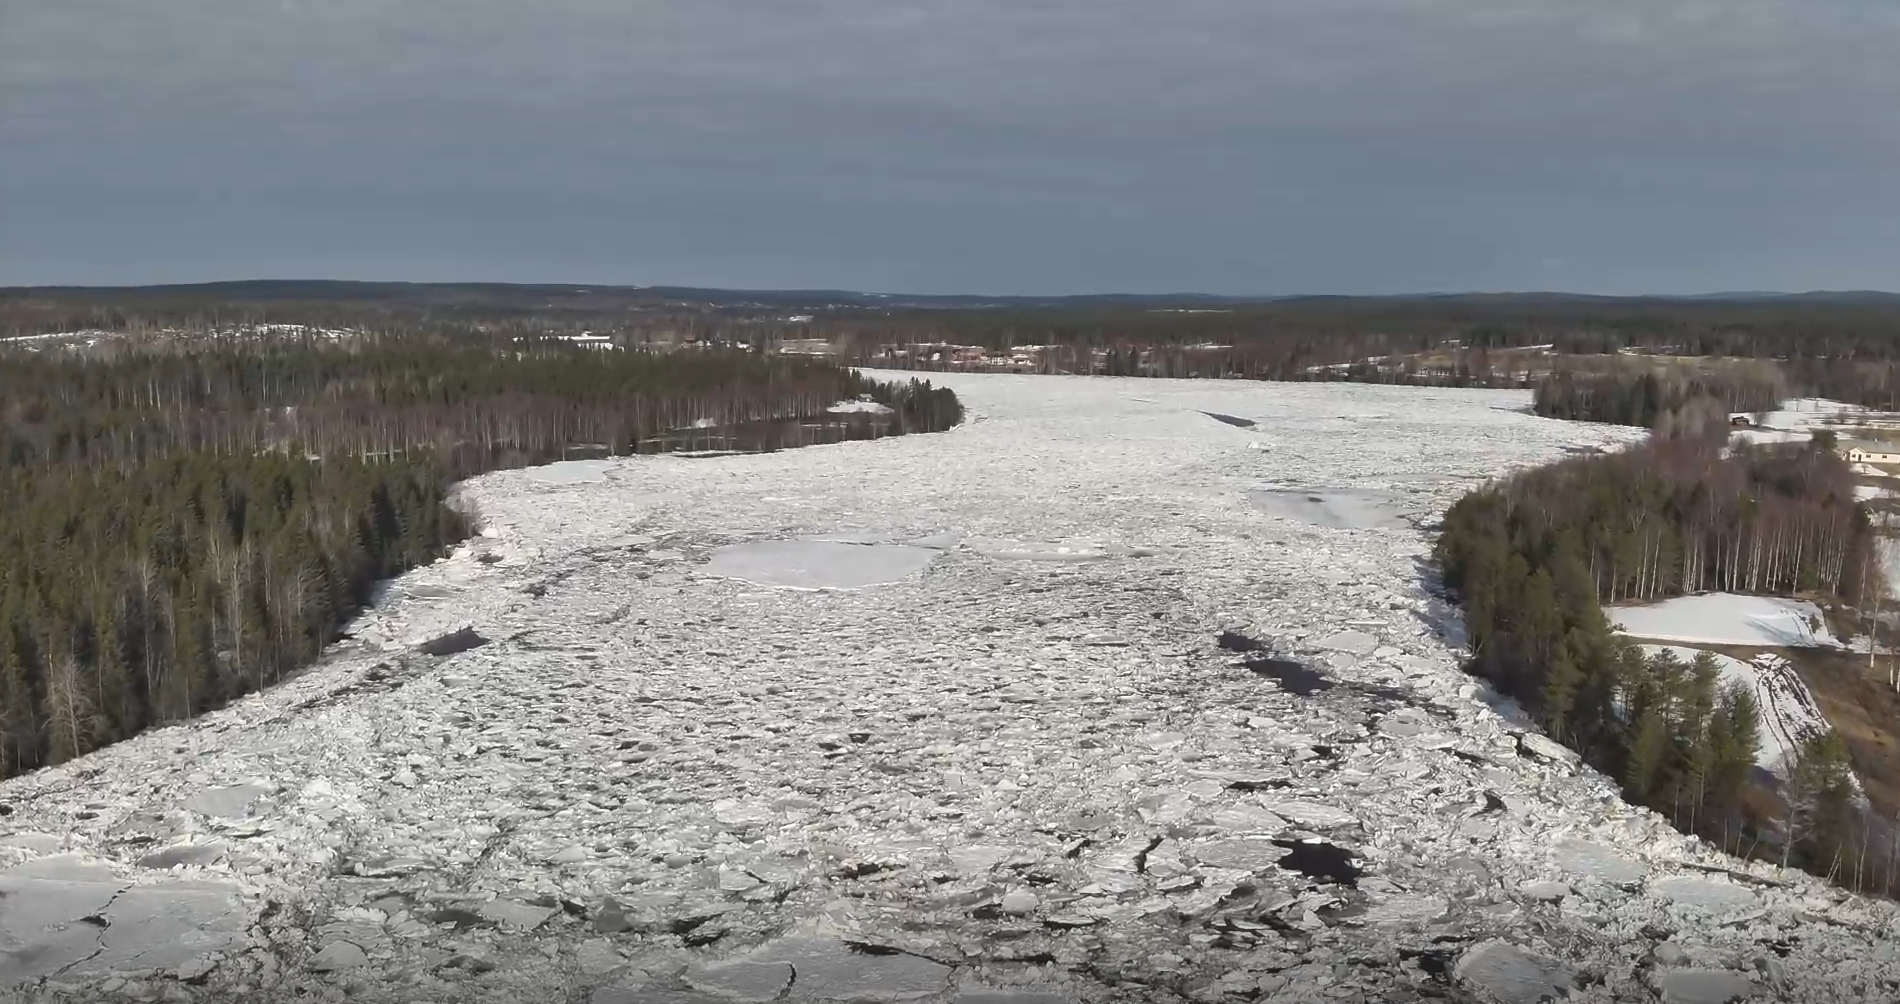 Matkakosken pohjoispuolelle Tornionjokeen on muodostunut jääpato – suurempaa vedennousua ei vielä havaittu